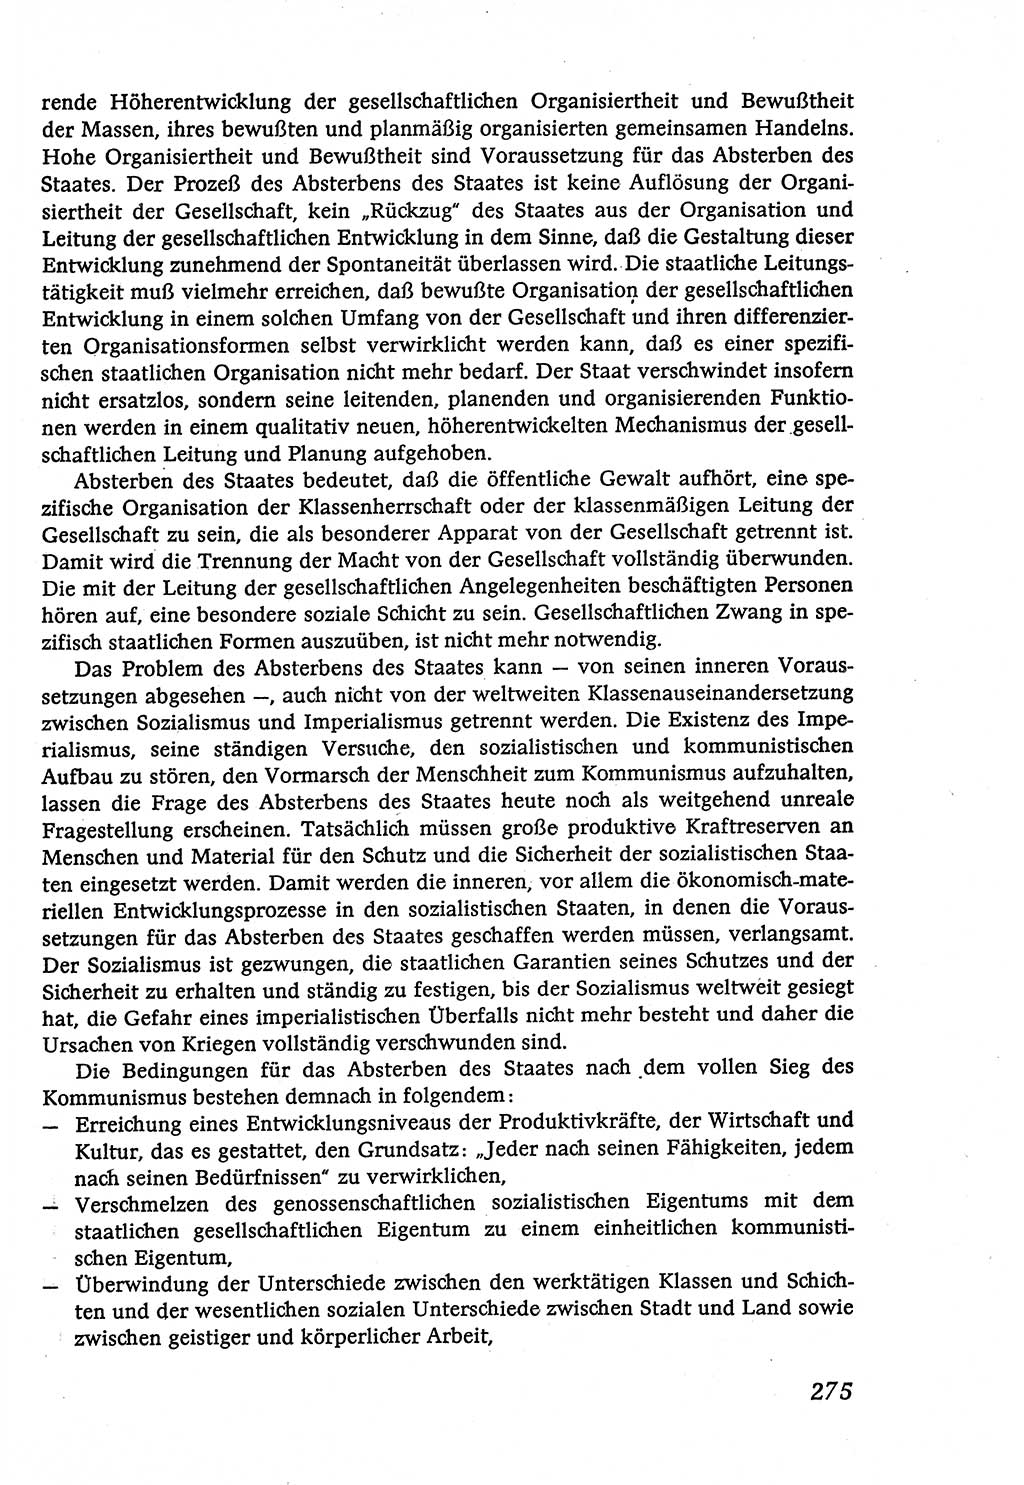 Marxistisch-leninistische (ML) Staats- und Rechtstheorie [Deutsche Demokratische Republik (DDR)], Lehrbuch 1980, Seite 275 (ML St.-R.-Th. DDR Lb. 1980, S. 275)